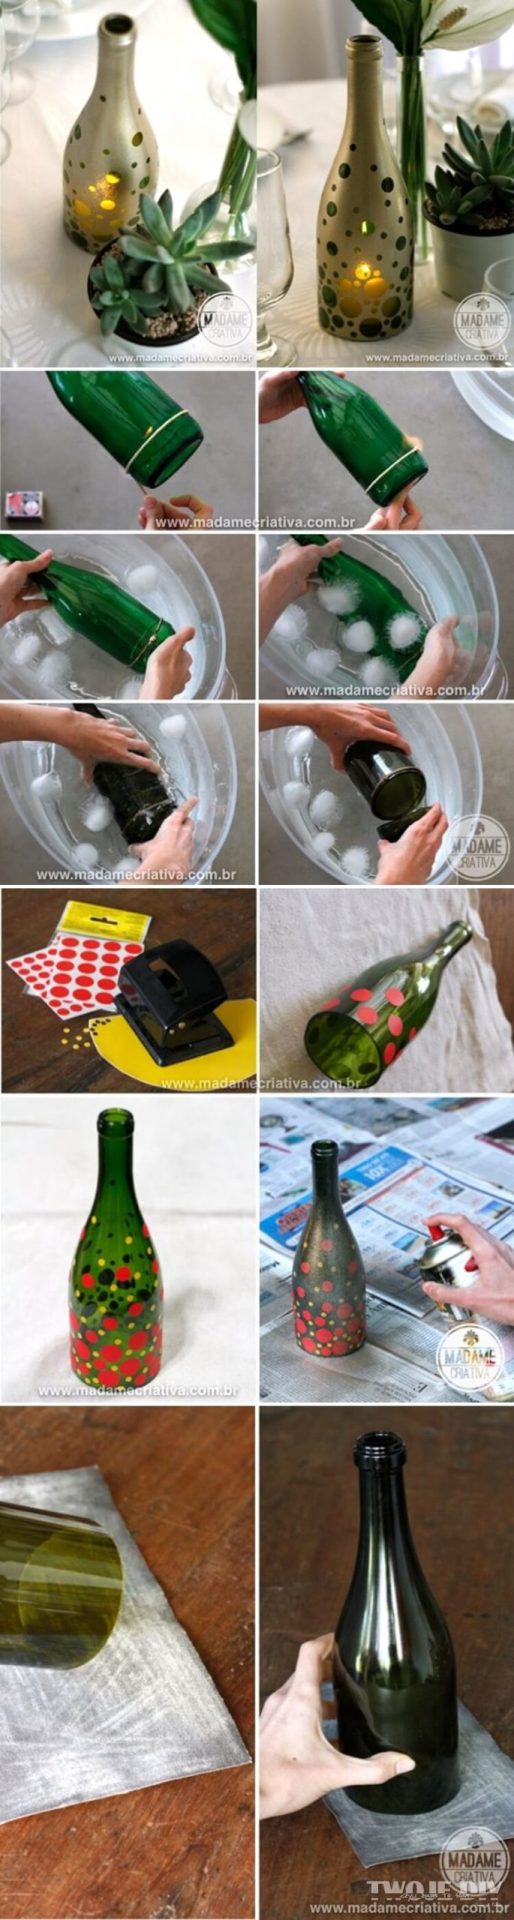 Repurposed DIY Wine Bottle Crafts recycle reuse